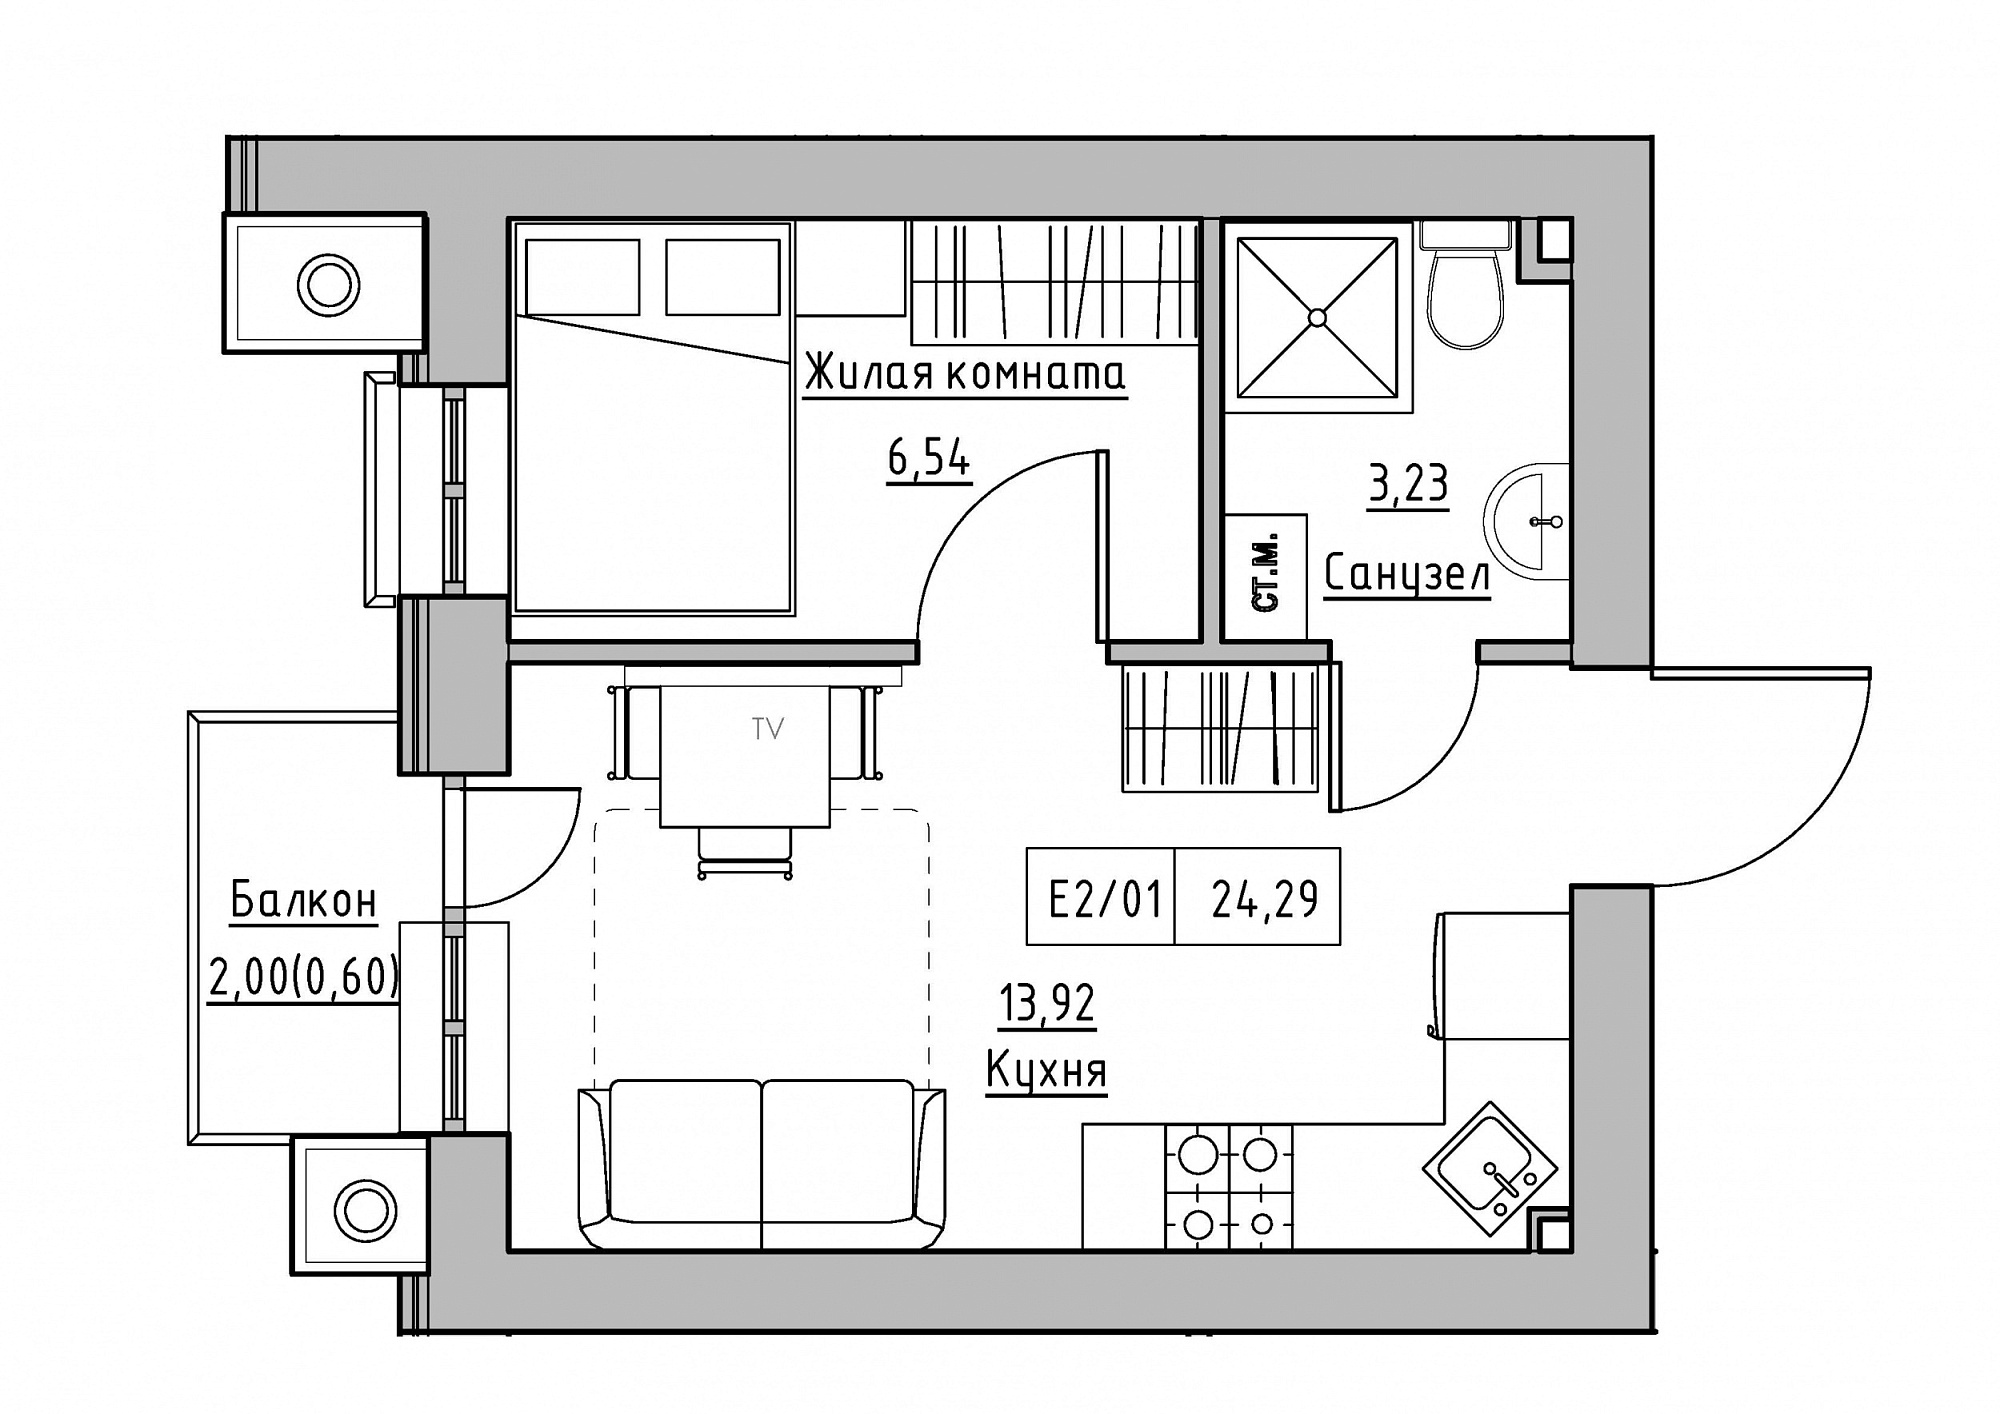 Планування 1-к квартира площею 24.29м2, KS-012-03/0009.